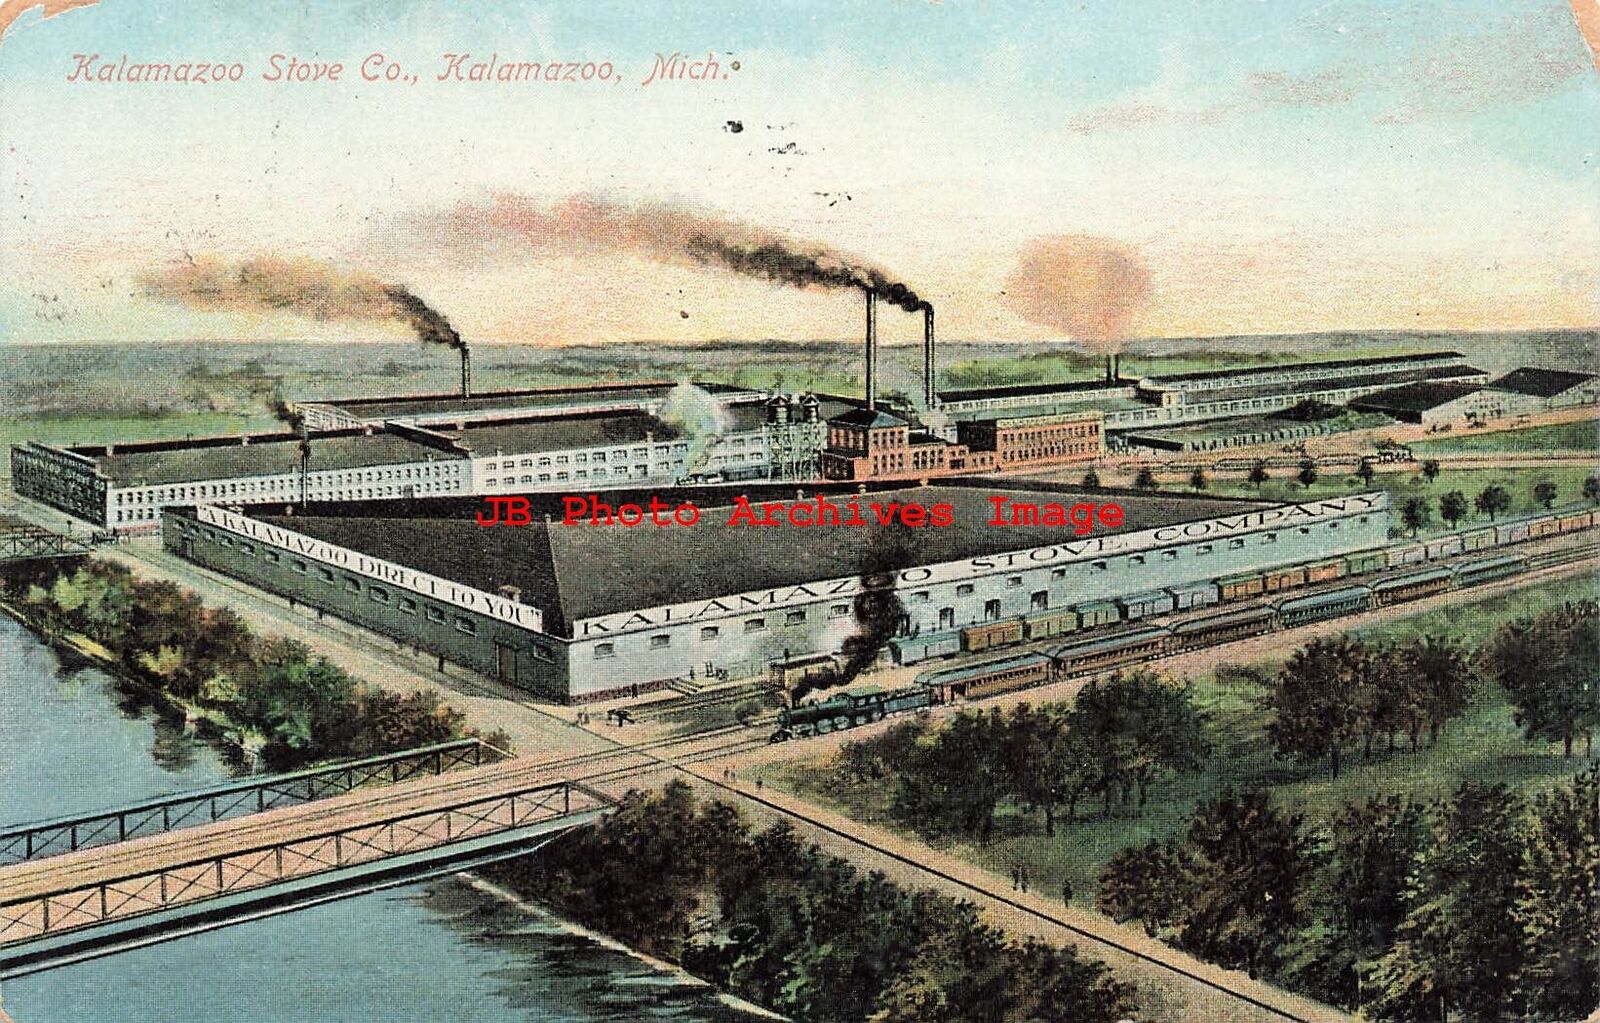 MI, Kalamazoo, Michigan, Kalamazoo Stove Co Plant, Panorama Scene, No 252-596